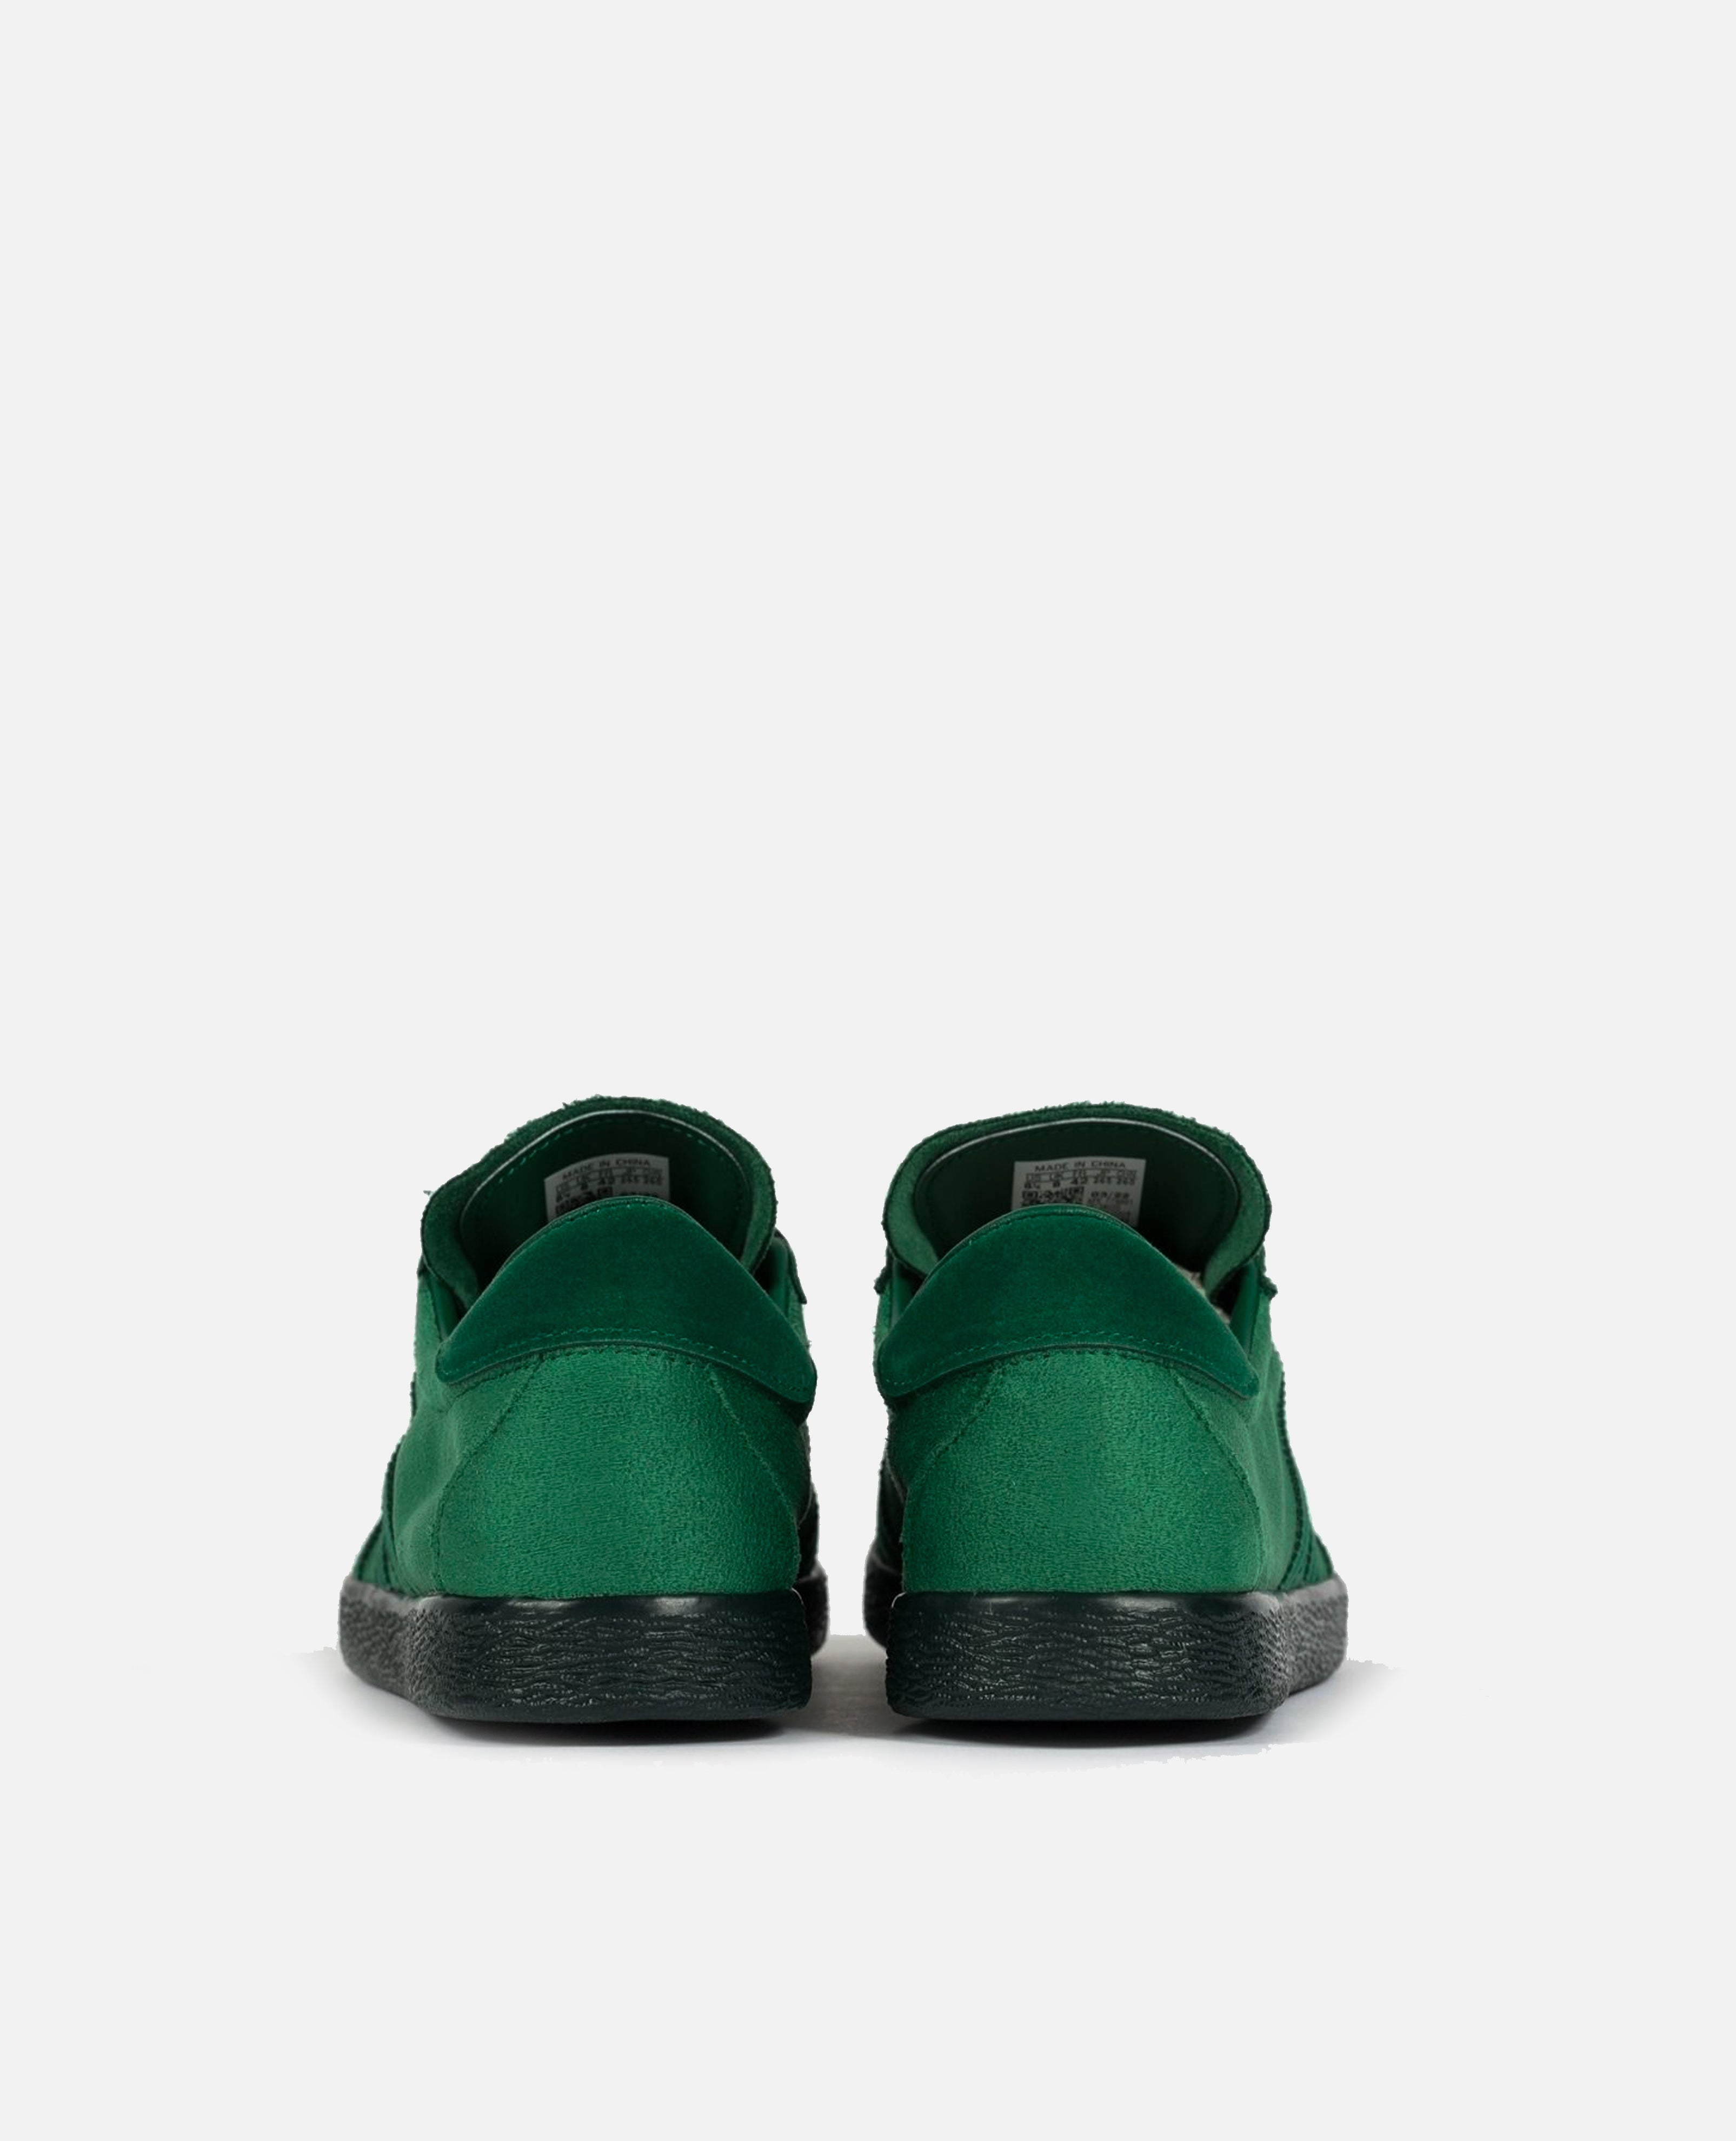 adidas Tobacco Gruen (Dark Green/Dark Green/Cloud White) – Patta